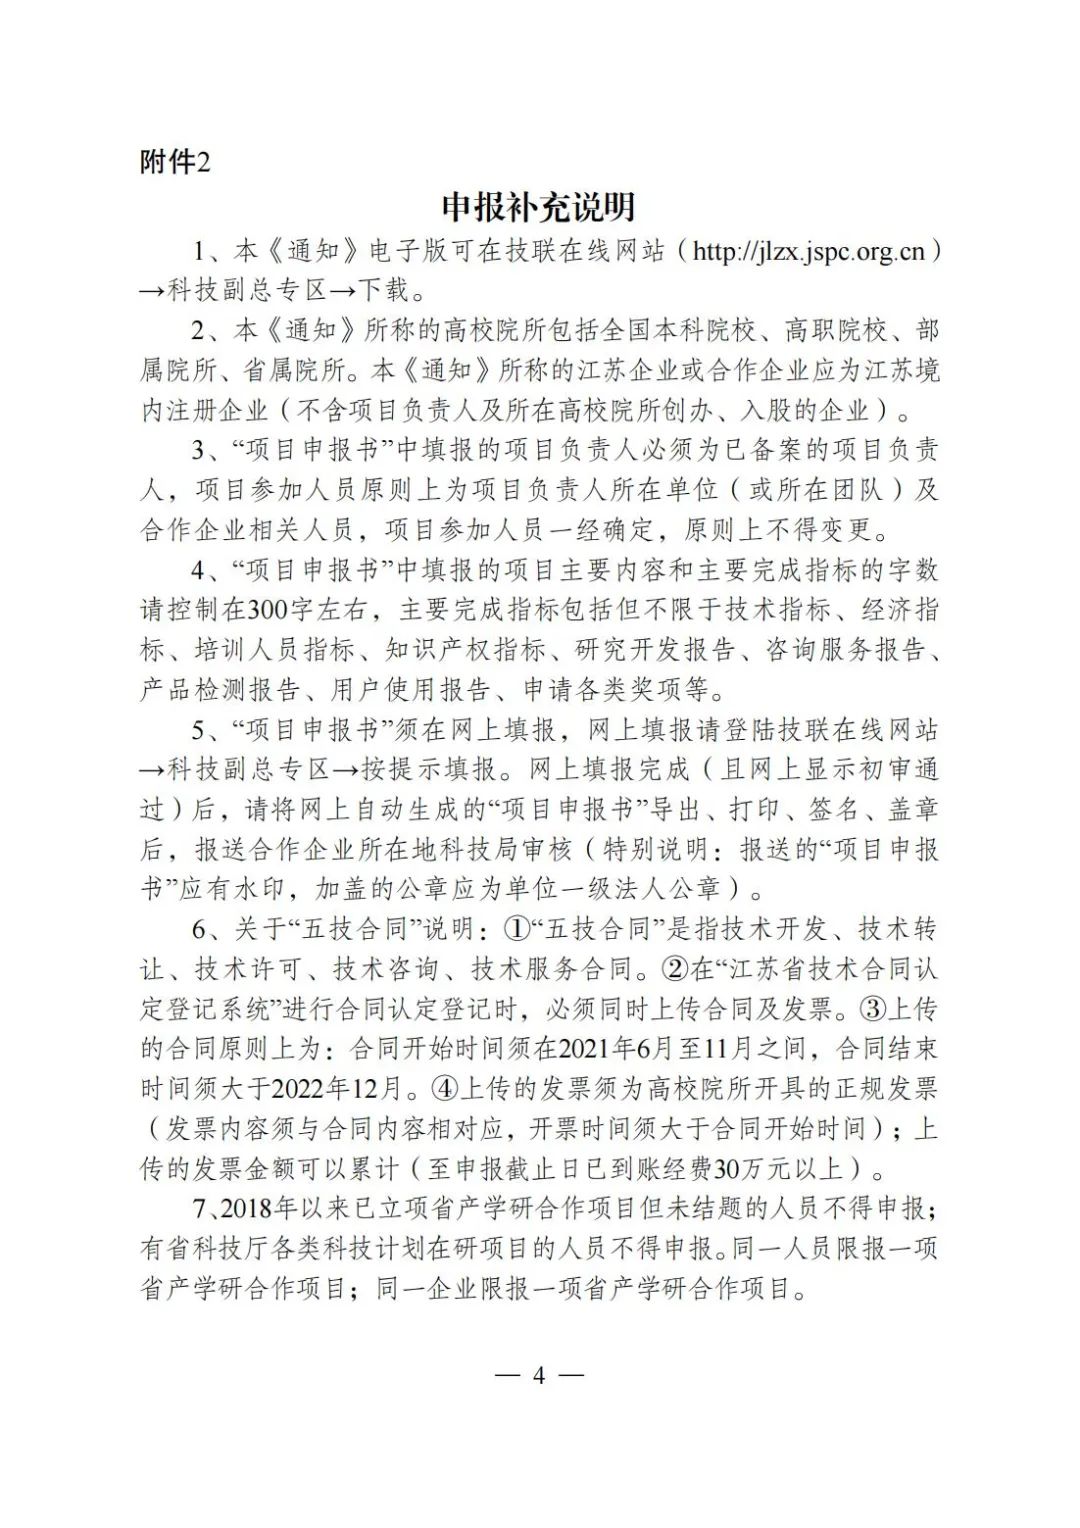 關于組織申報2022年第一批江蘇省產學研合作項目通知4.jpg